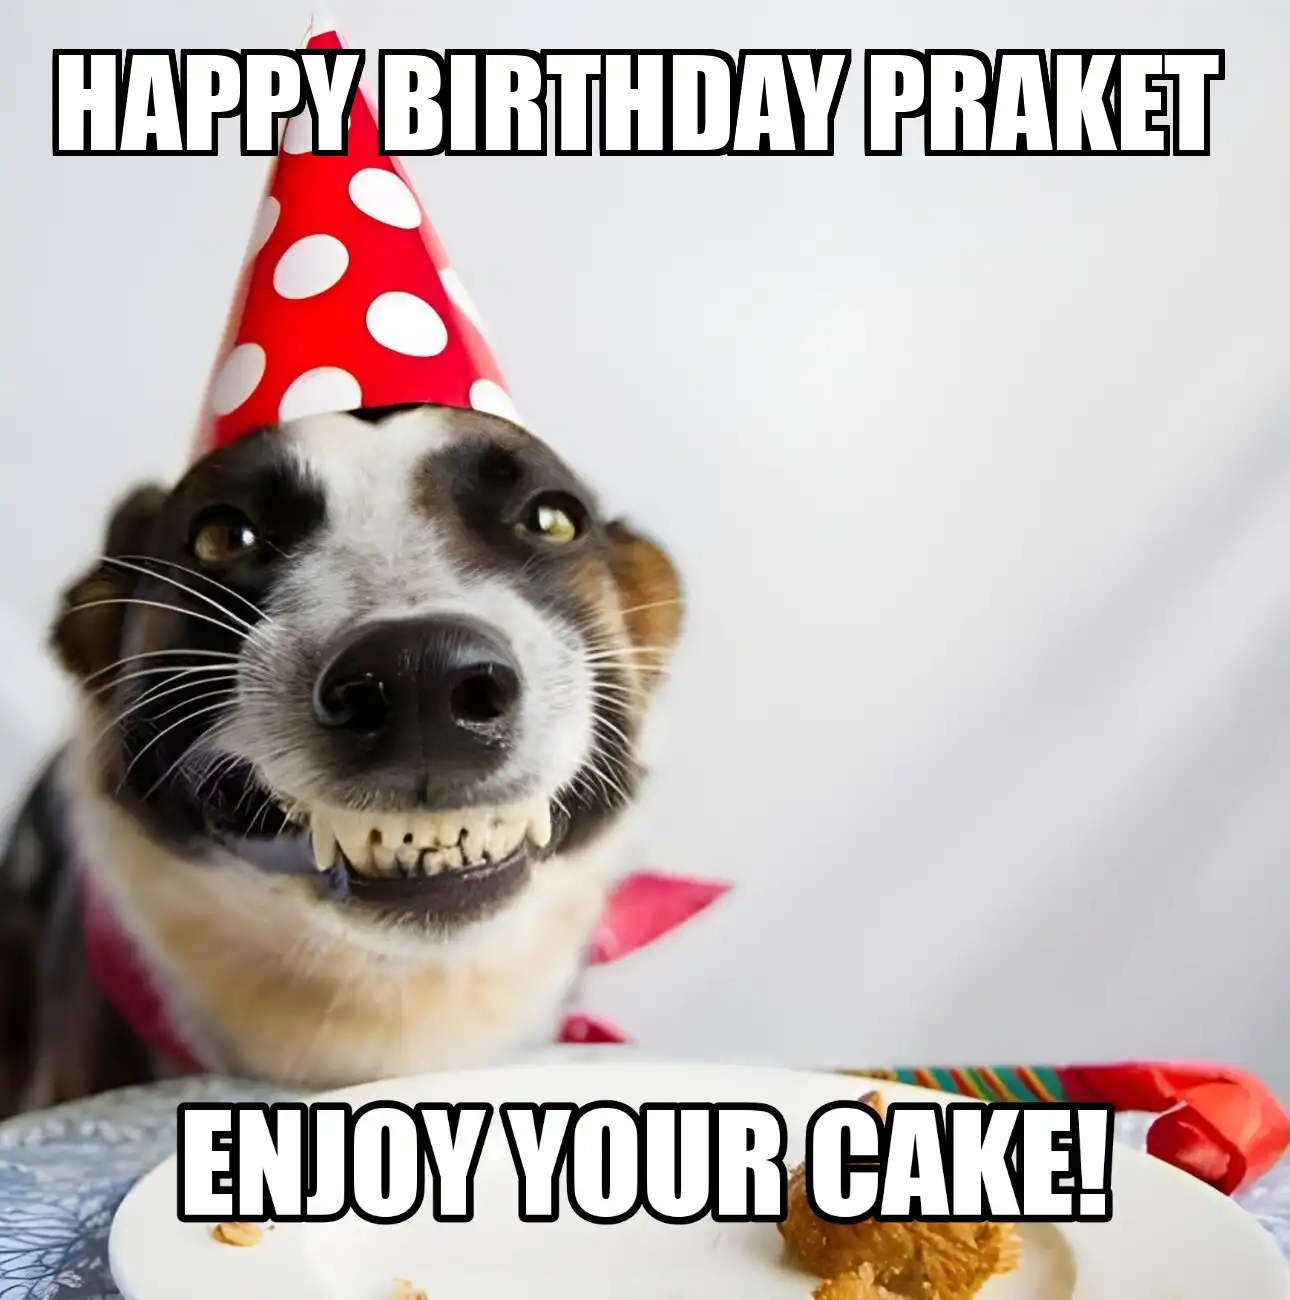 Happy Birthday Praket Enjoy Your Cake Dog Meme